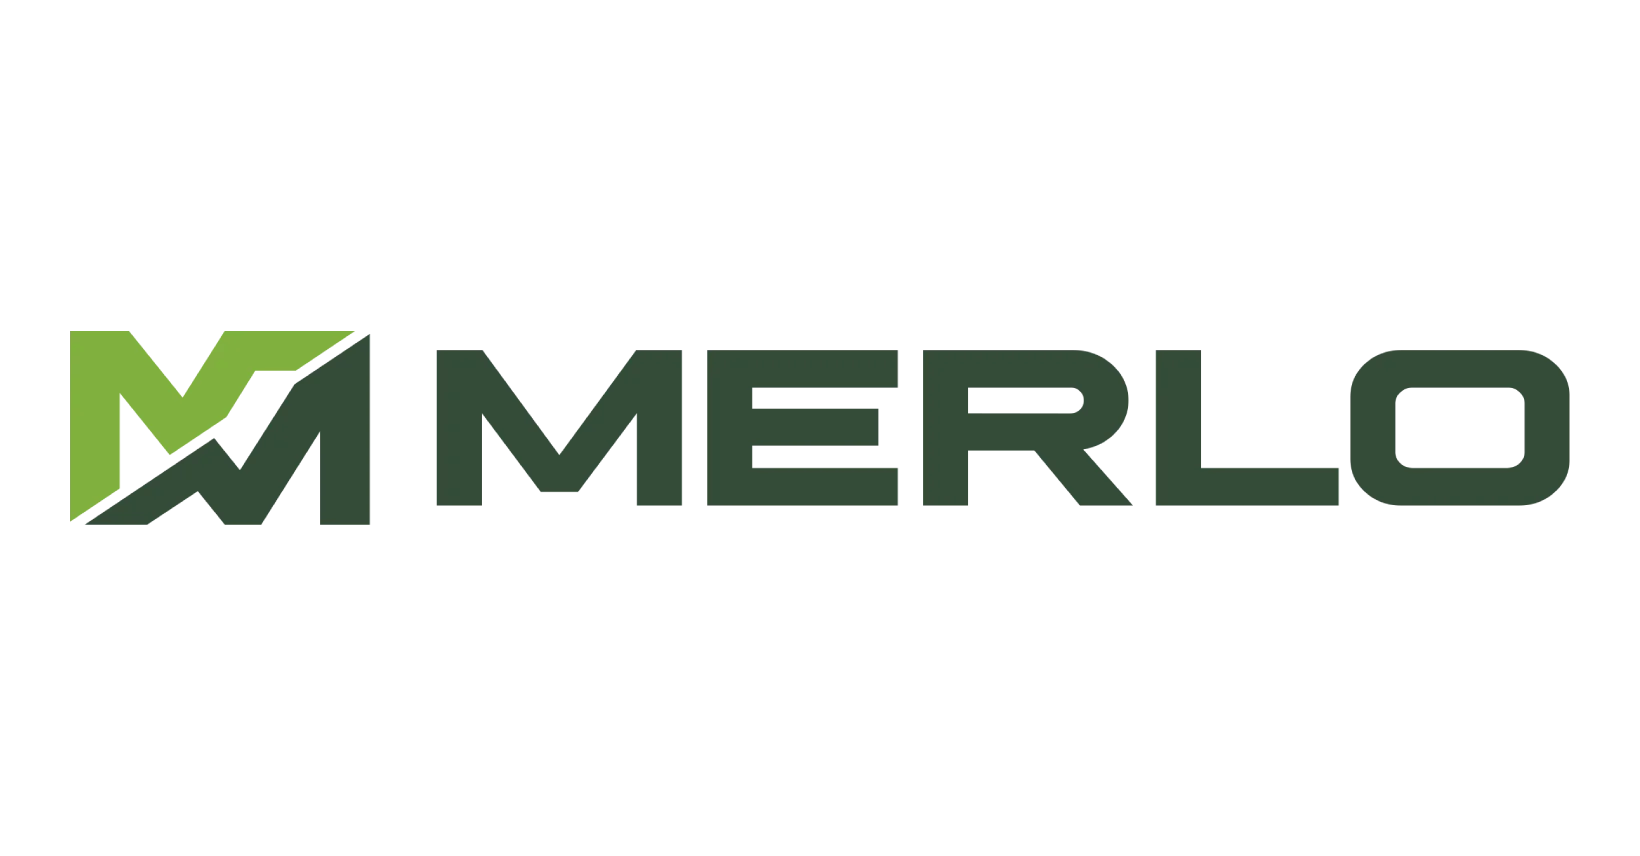 Logo de Merlo : Symbole de performance et d'innovation dans le domaine des chariots télescopiques et des équipements de manutention.